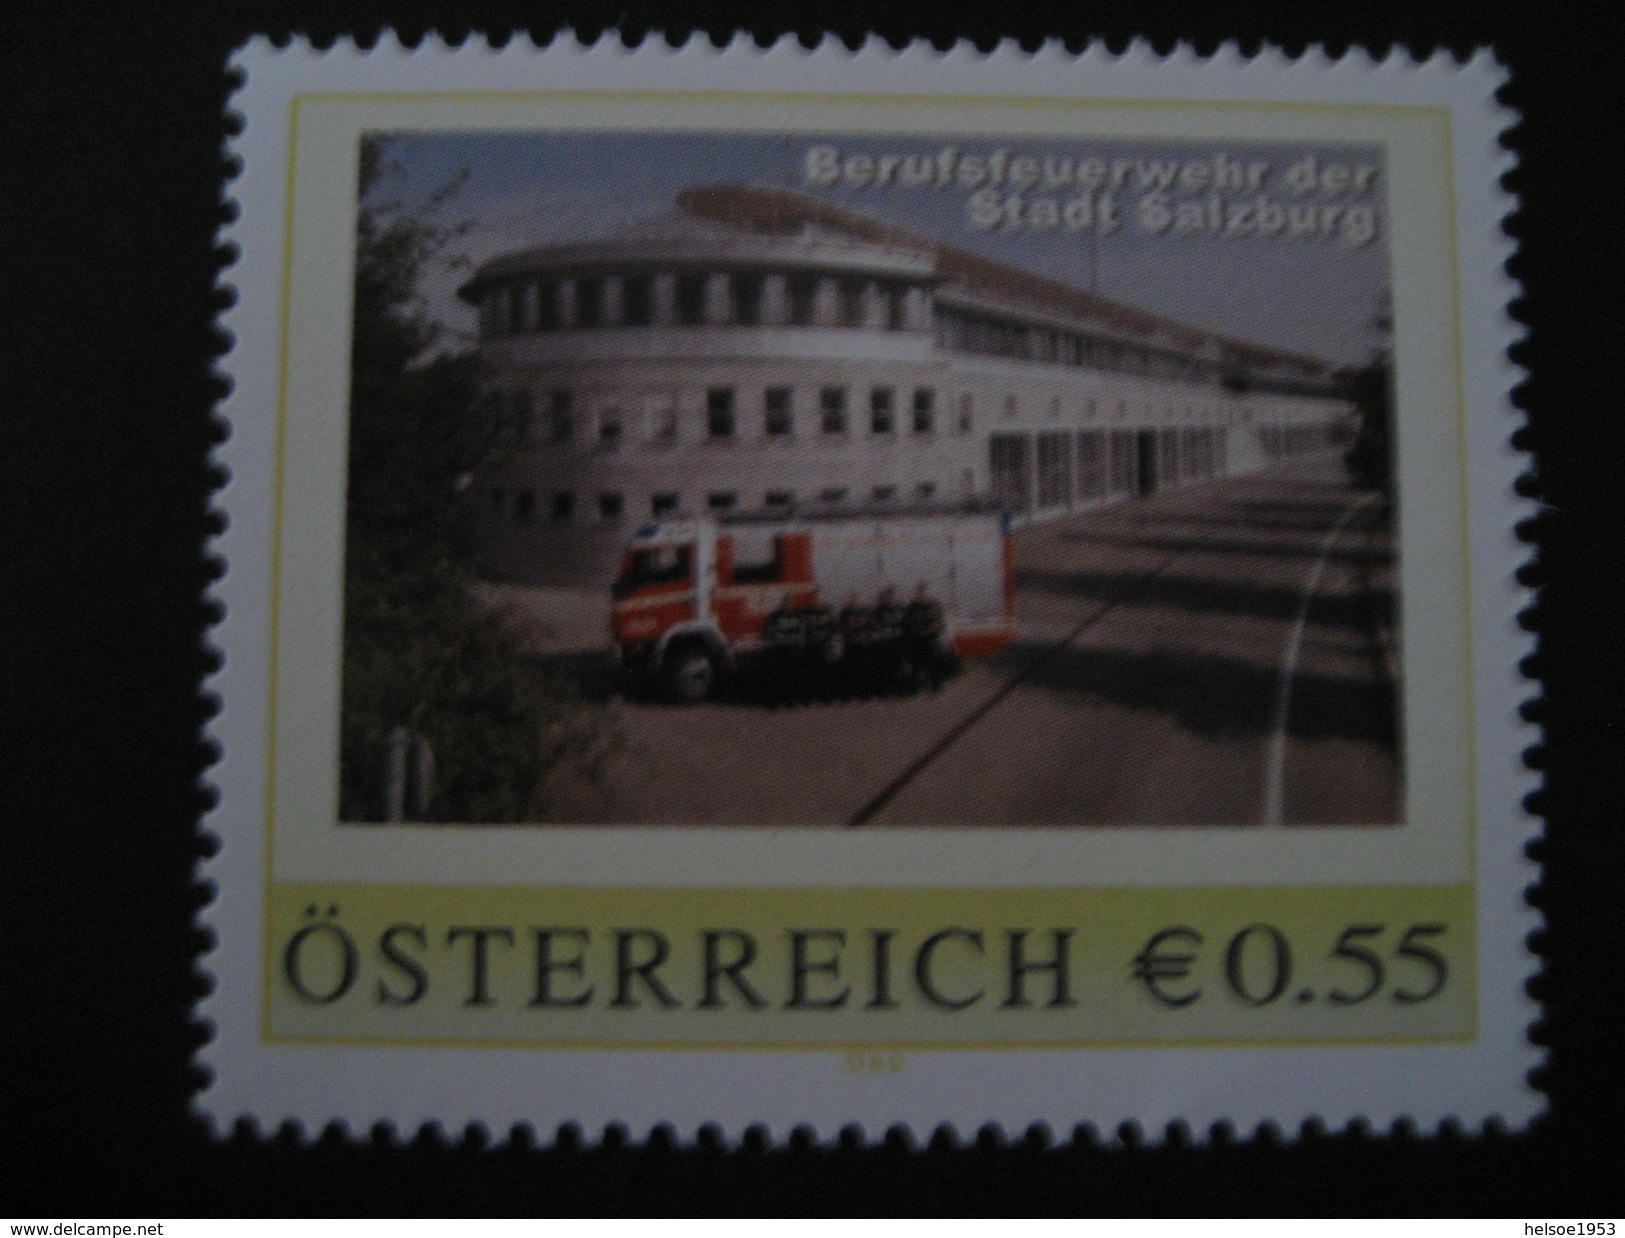 Pers.BM 8007112** Salzburg Berufsfeuerwehr, Ausgabetag 01.10.05 - Persoonlijke Postzegels